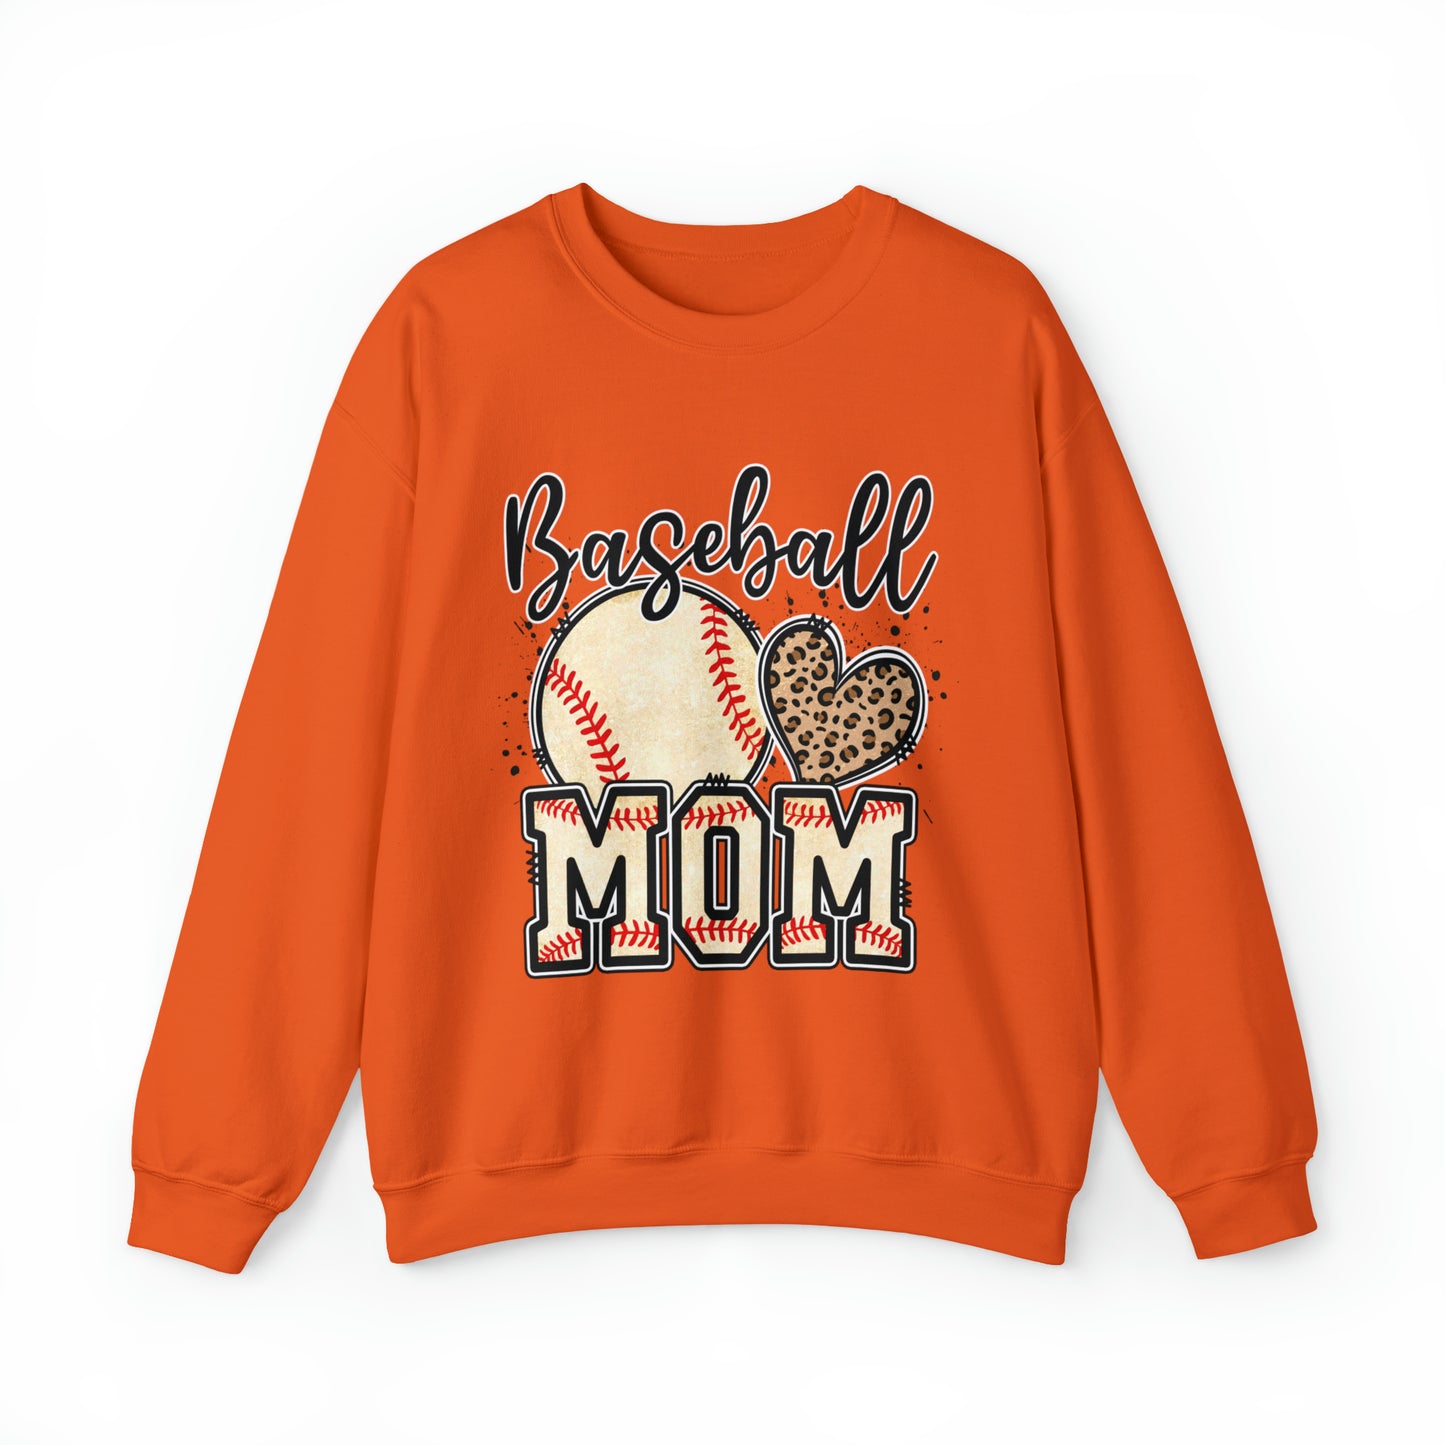 Baseball Mom Women's Crewneck Sweatshirt